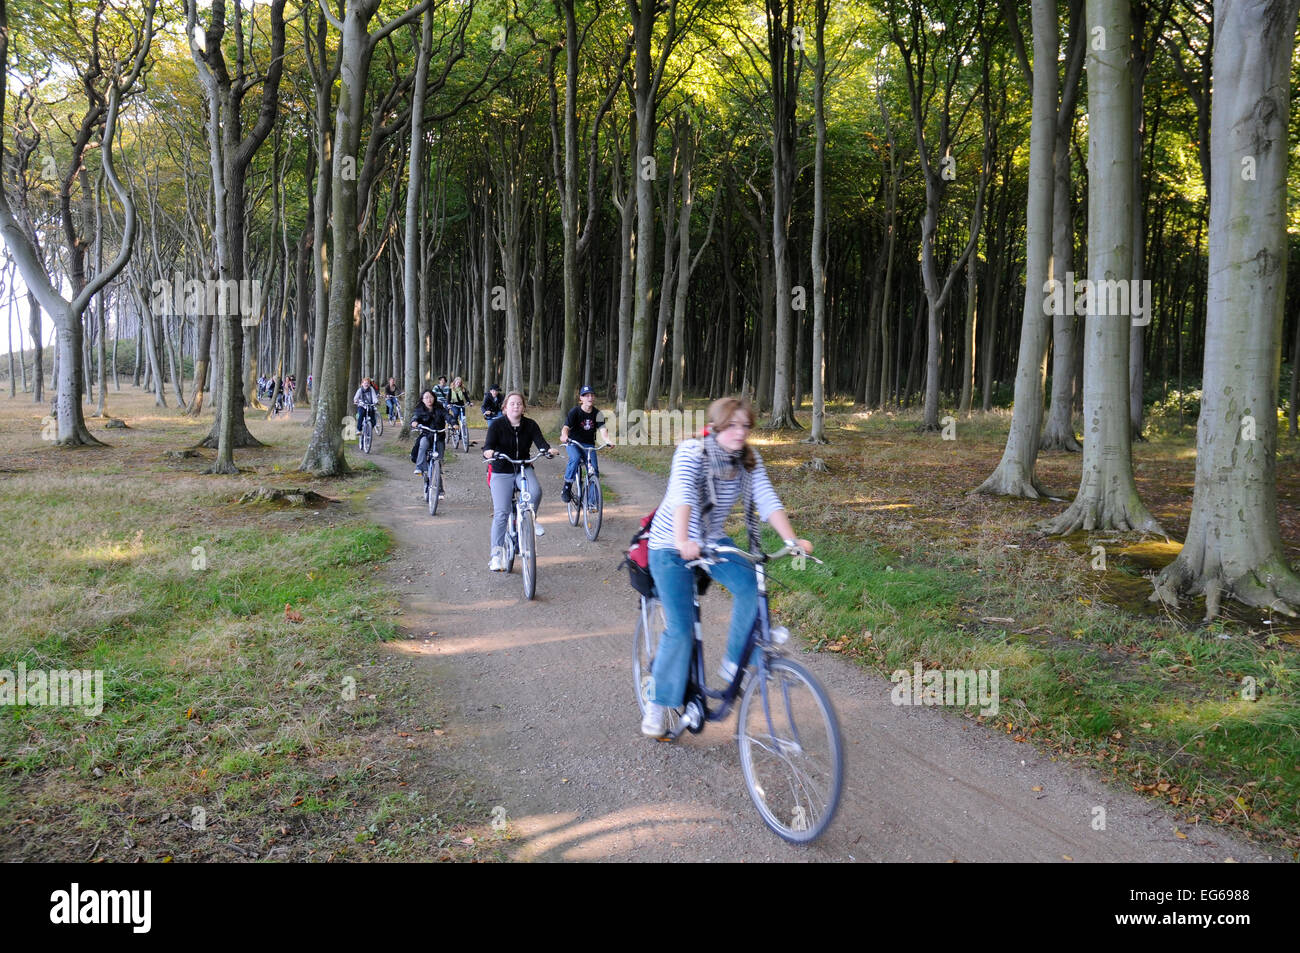 Forêt de hêtres, l'esprit bois, bois ghost, avec les cyclistes à la mer baltique à Rostock, Mecklembourg-Poméranie-Occidentale, Allemagne Banque D'Images